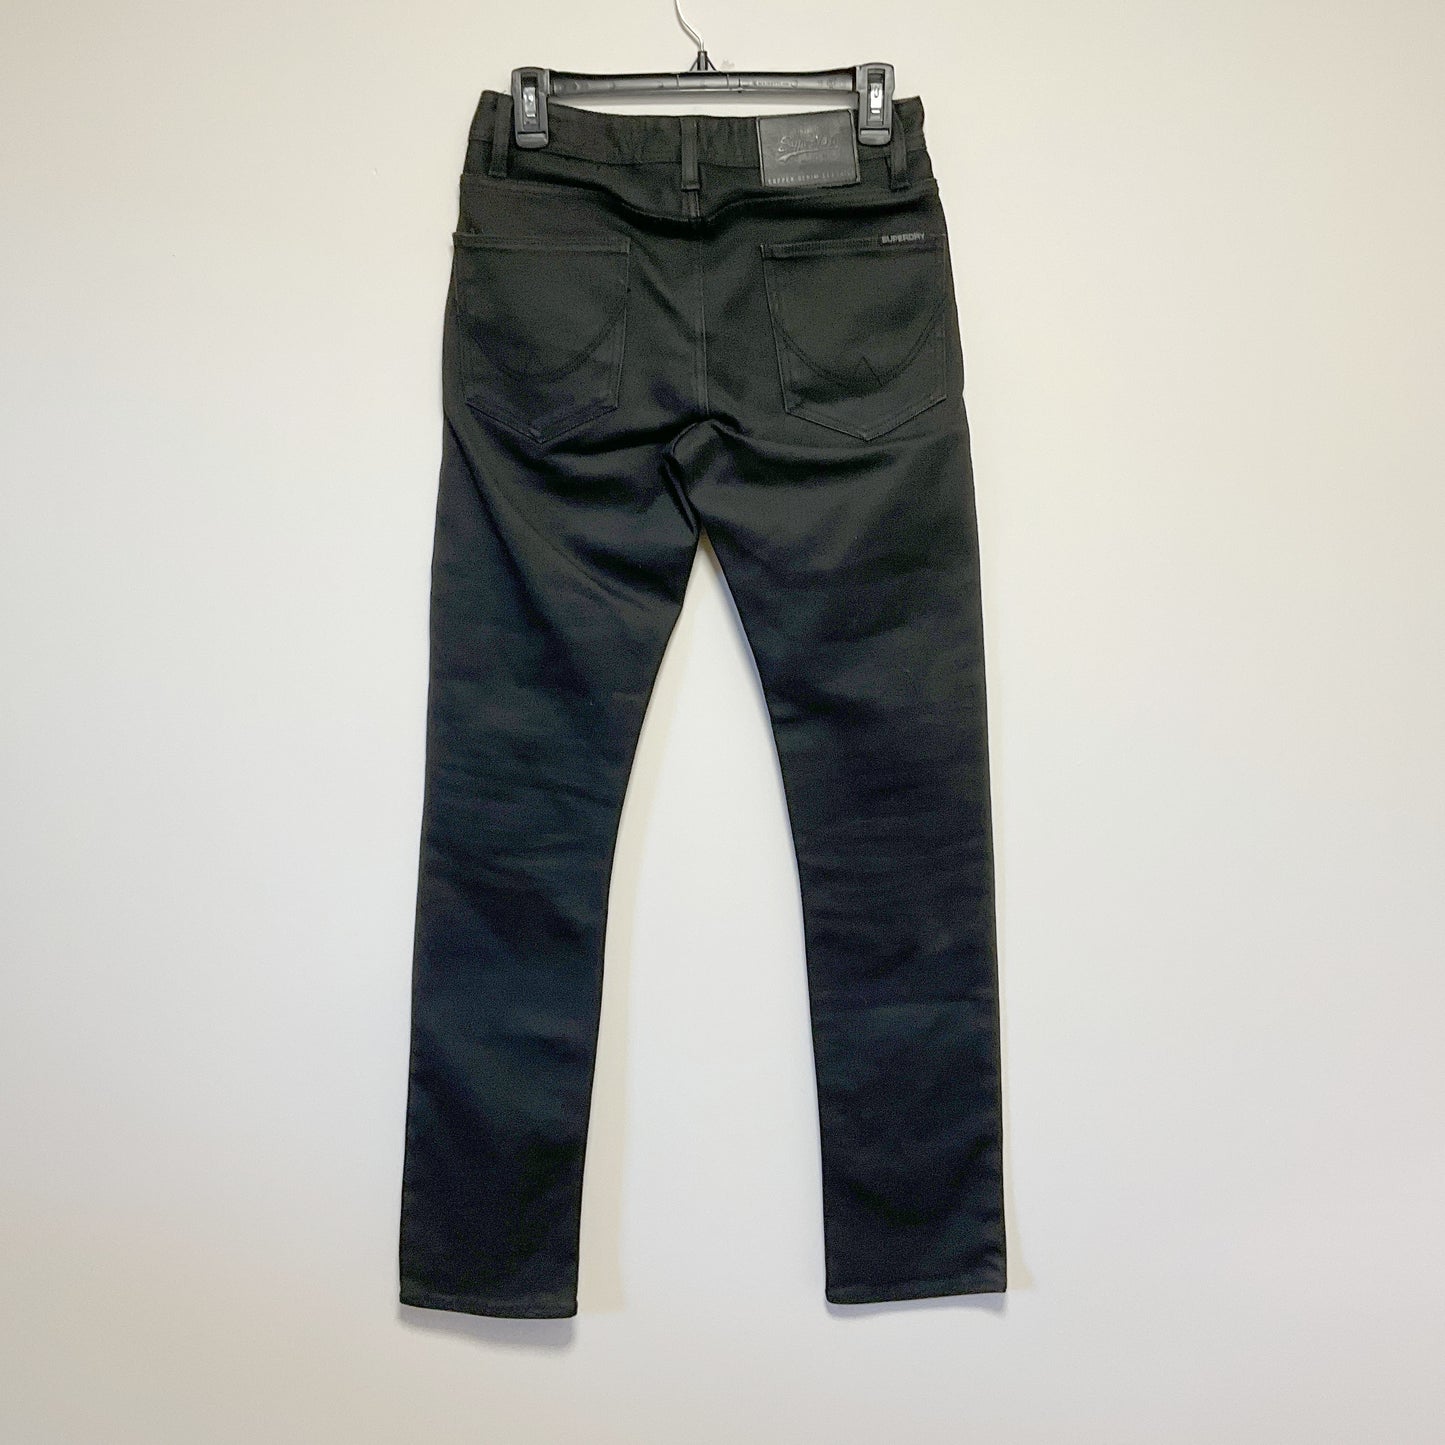 SUPERDRY -  Men Corporal Slim Fit Jeans - Size W28 L32